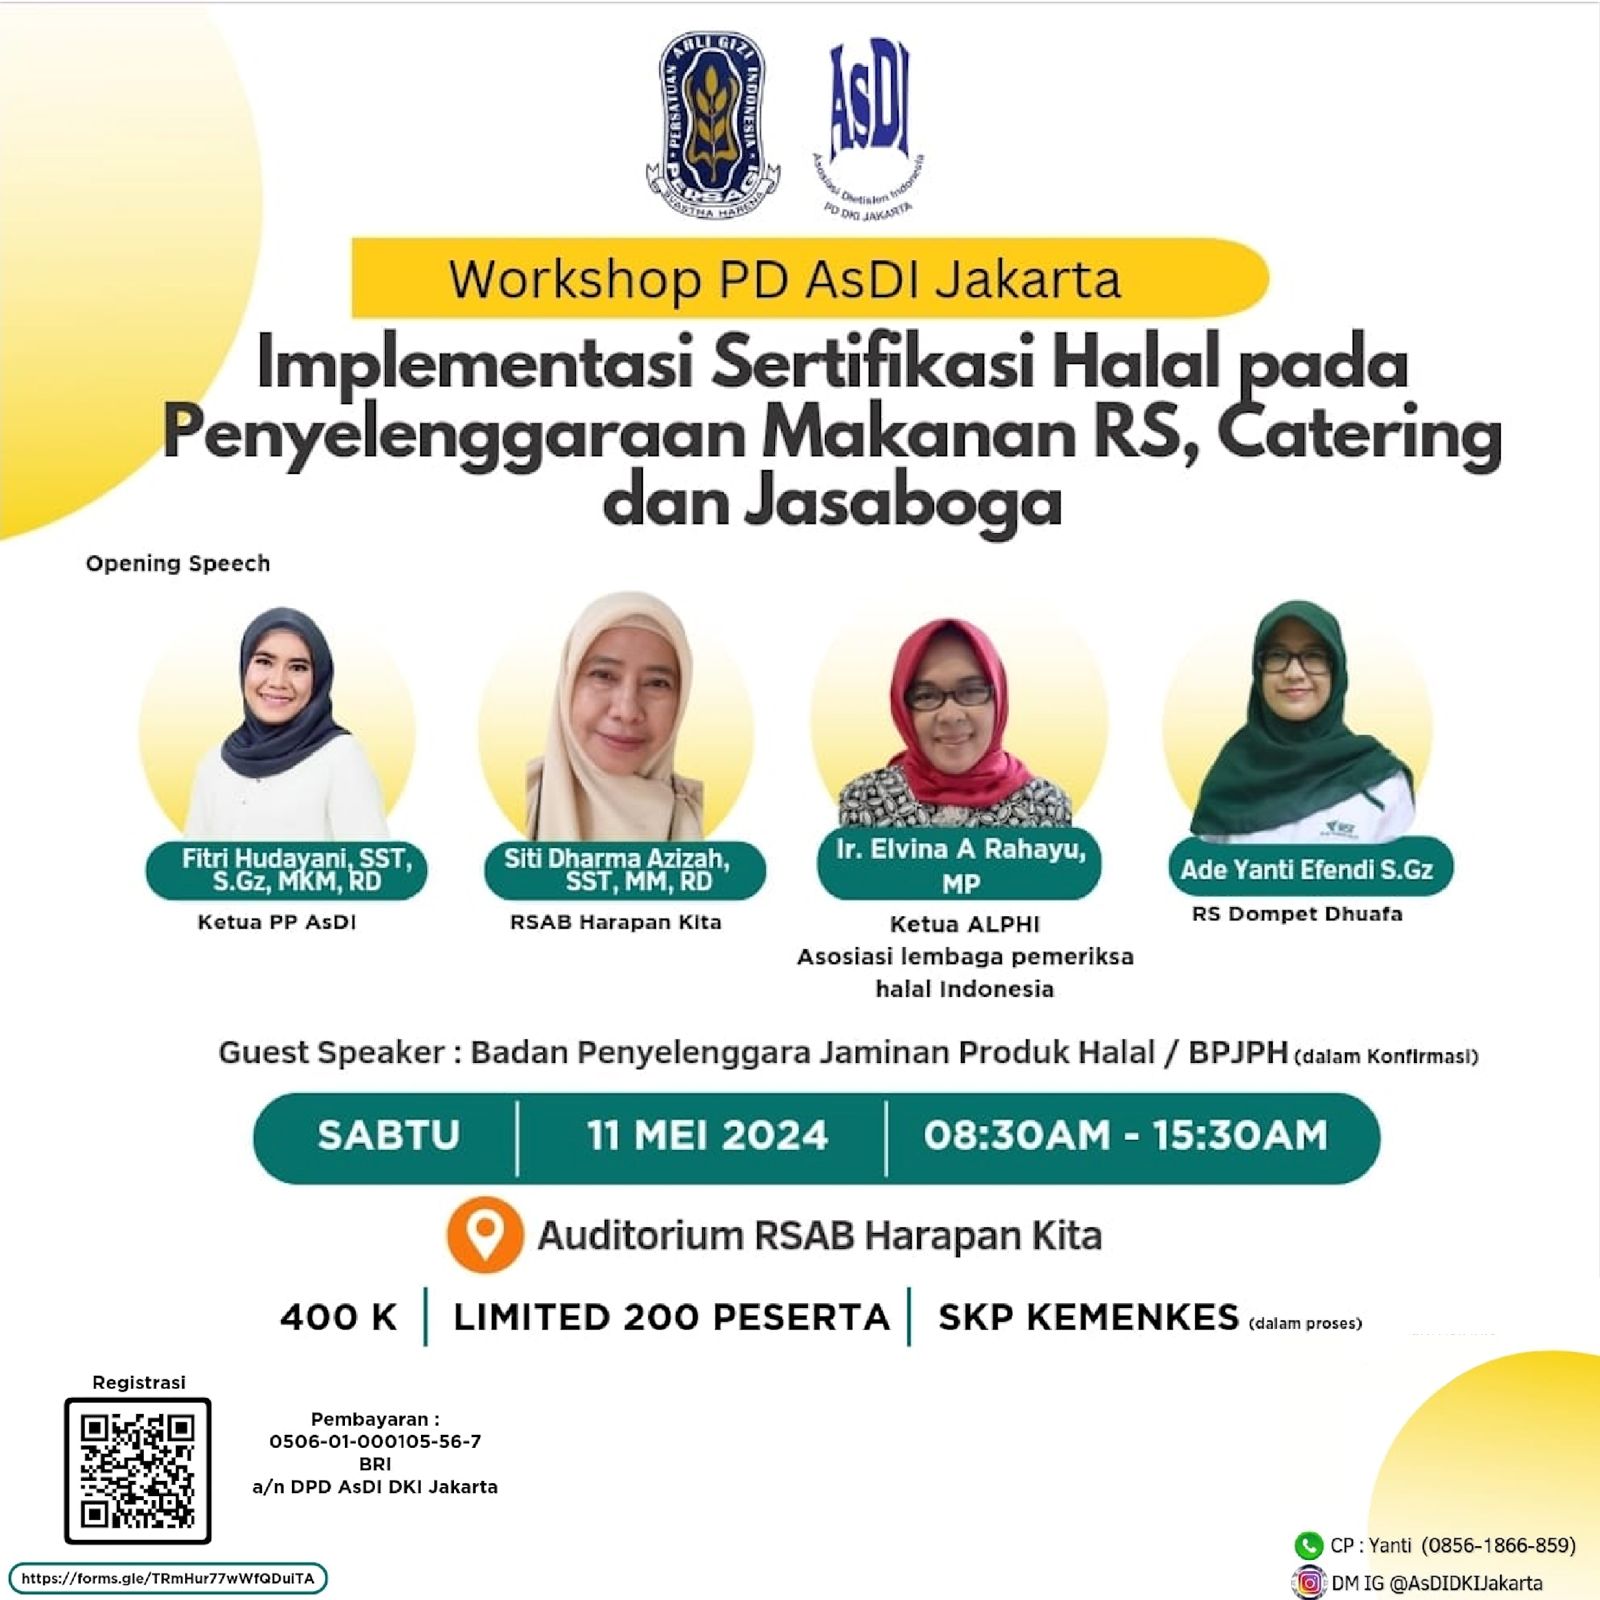 Implementasi Sertifikasi Halal pada Penyelenggaraan Makanan RS, Catering dan Jasaboga